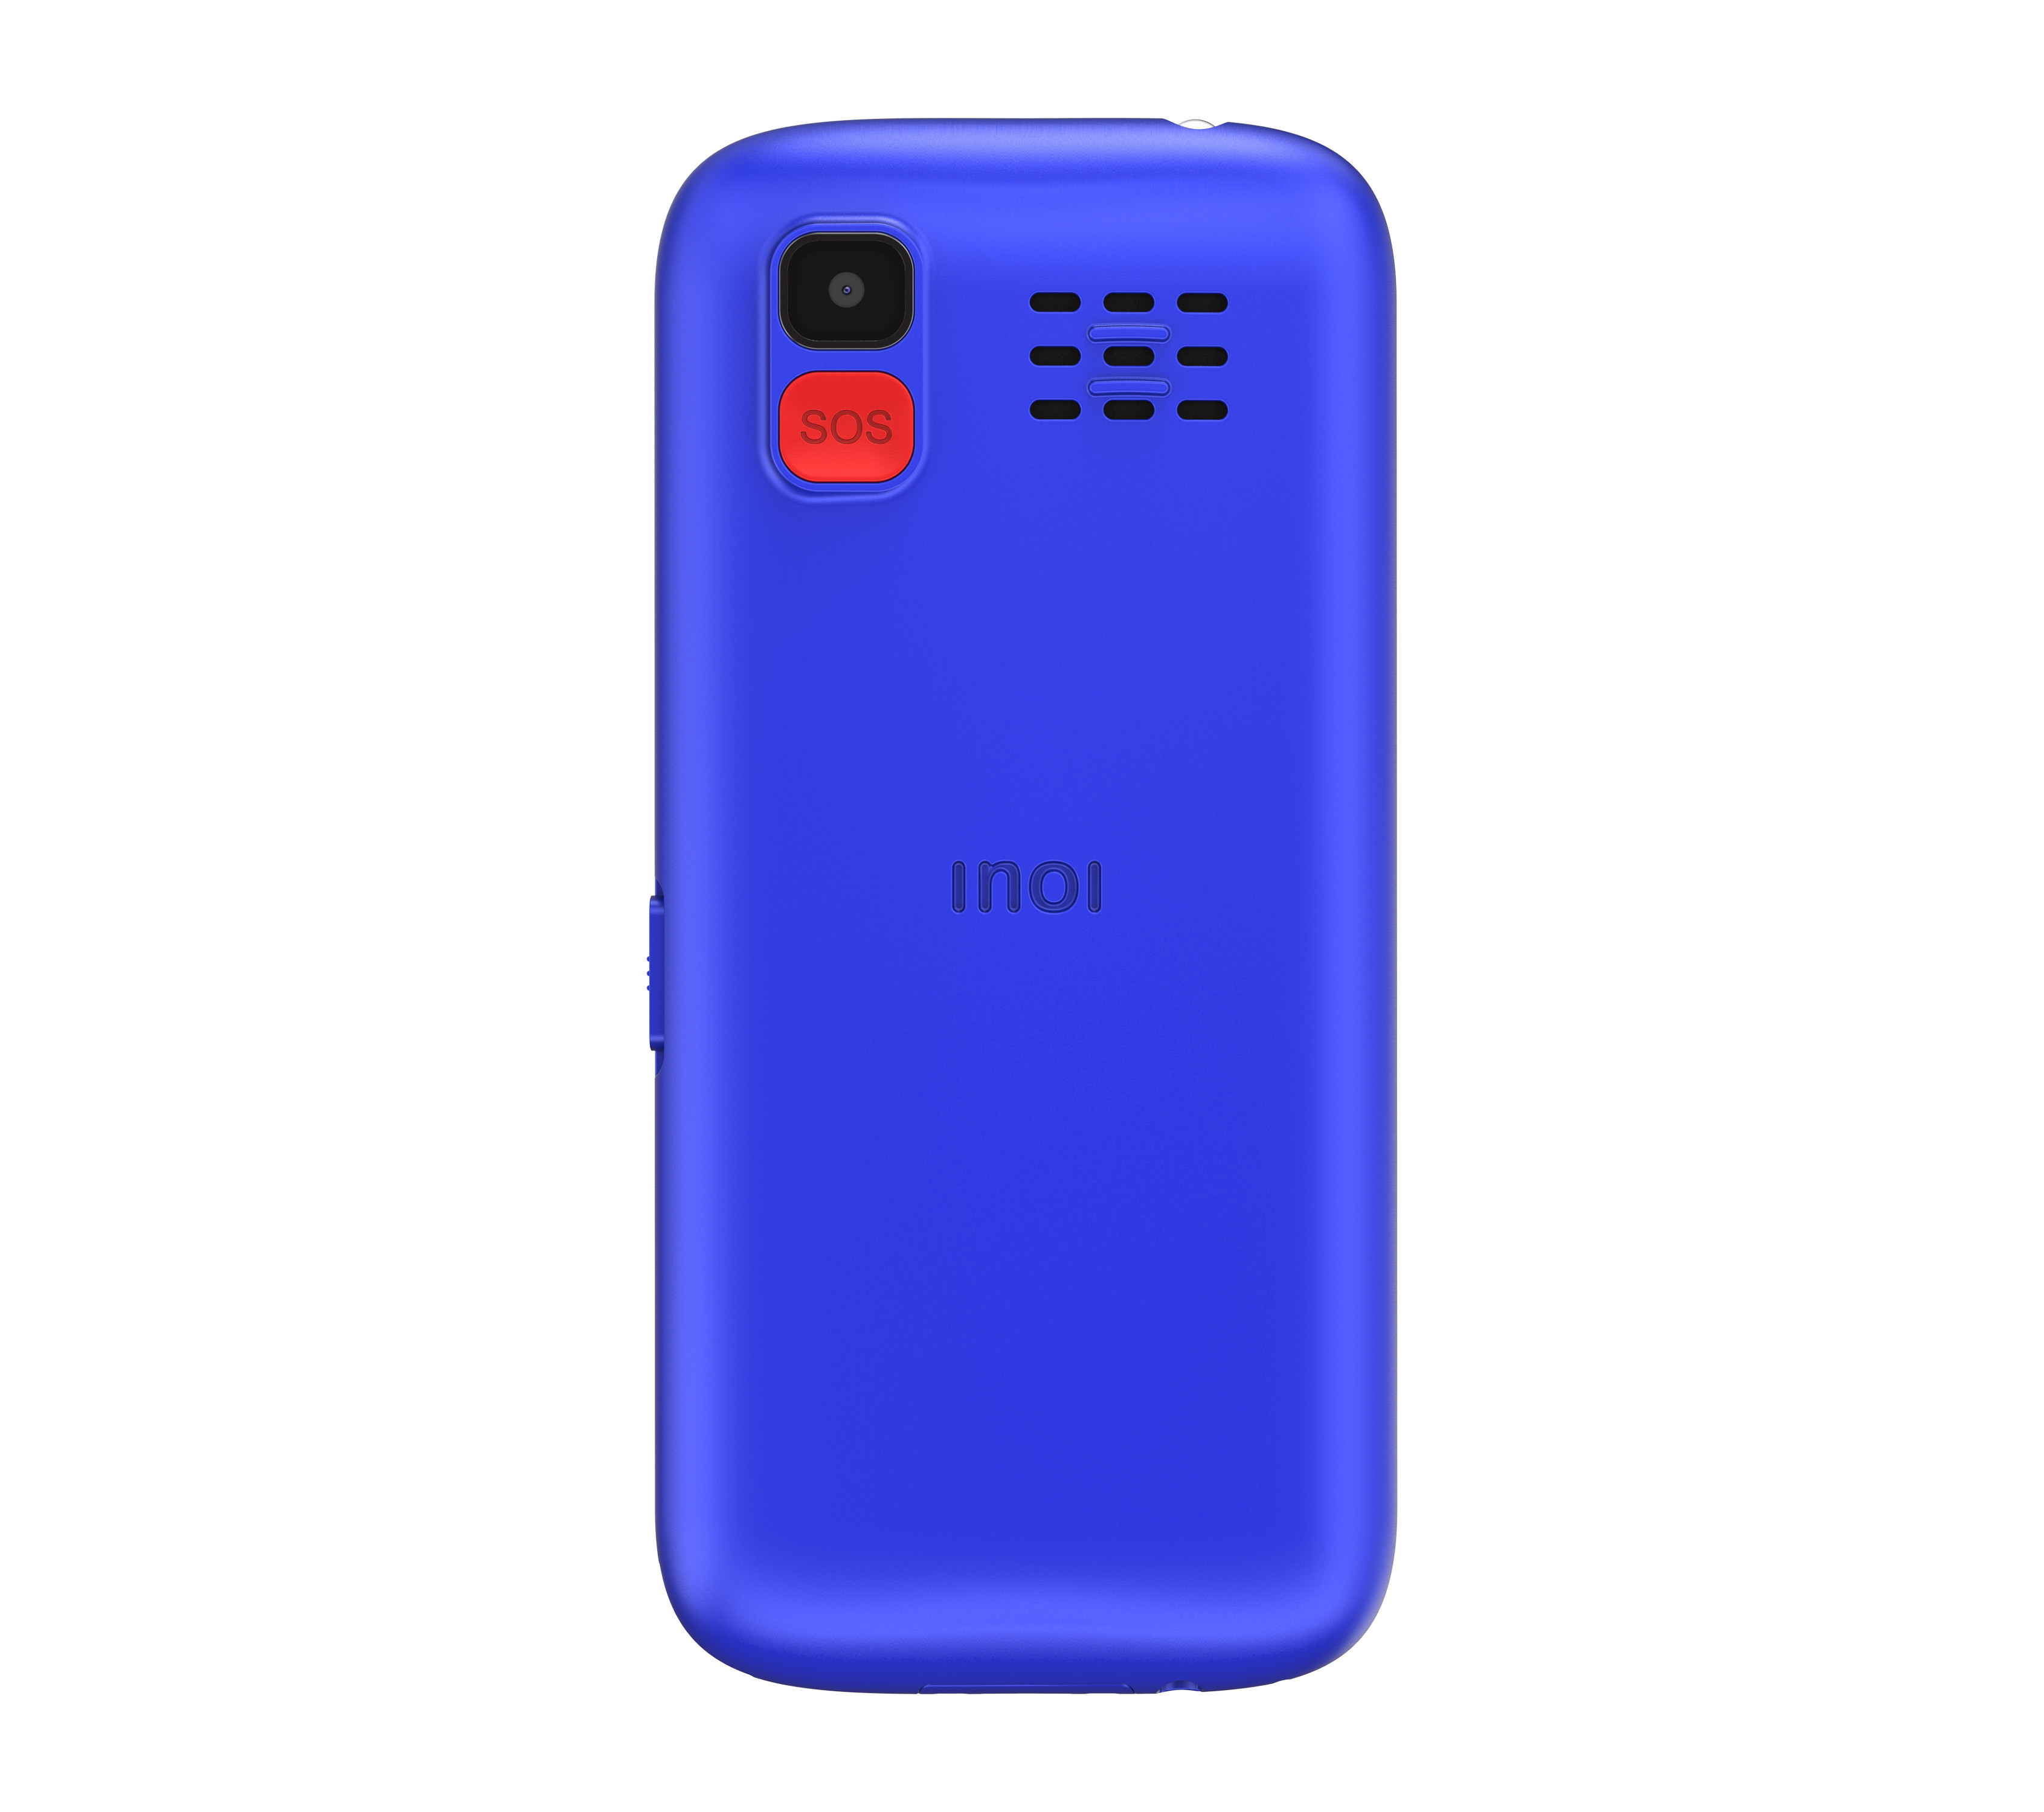 Мобильный телефон INOI 118B, цена. Цвета в наличии: синий, красный